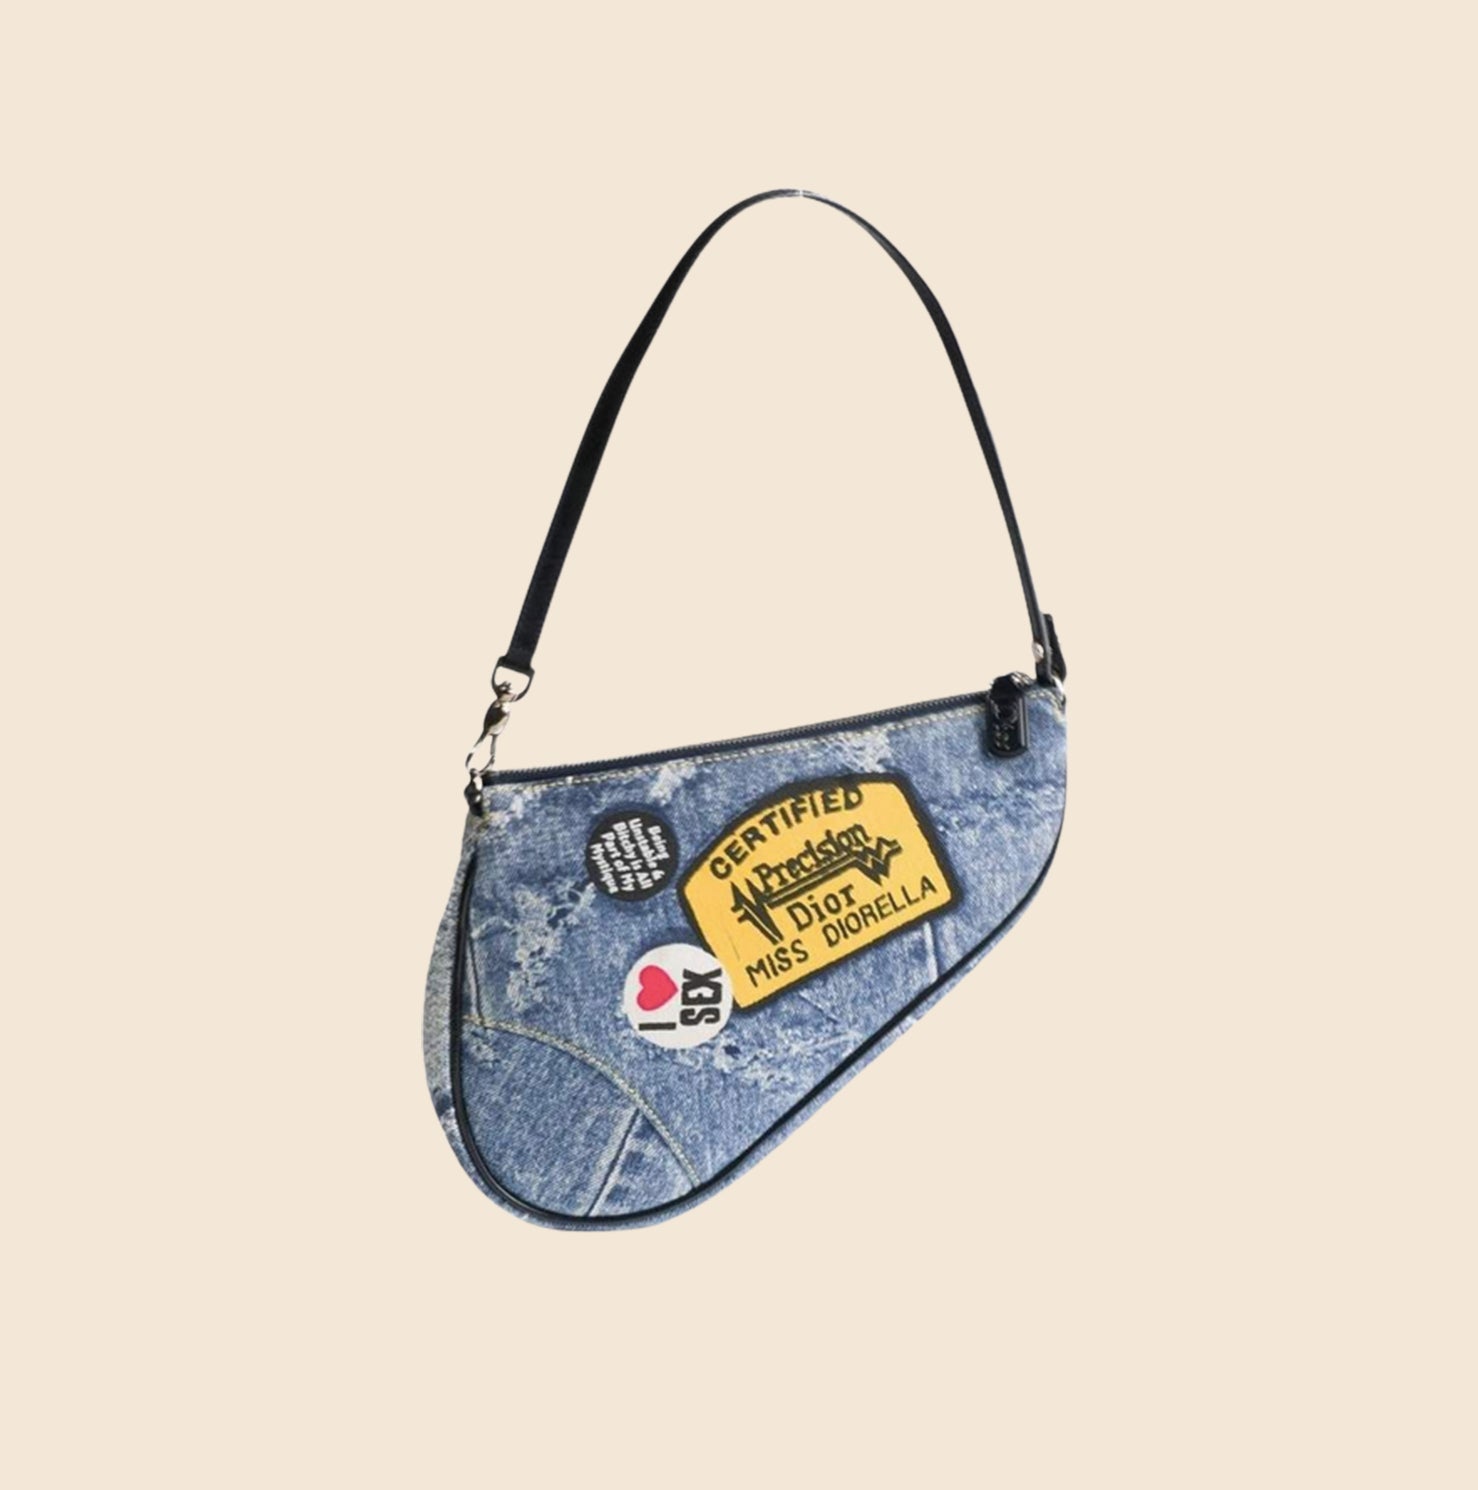 Christian Dior Camo Mini Saddle Bag